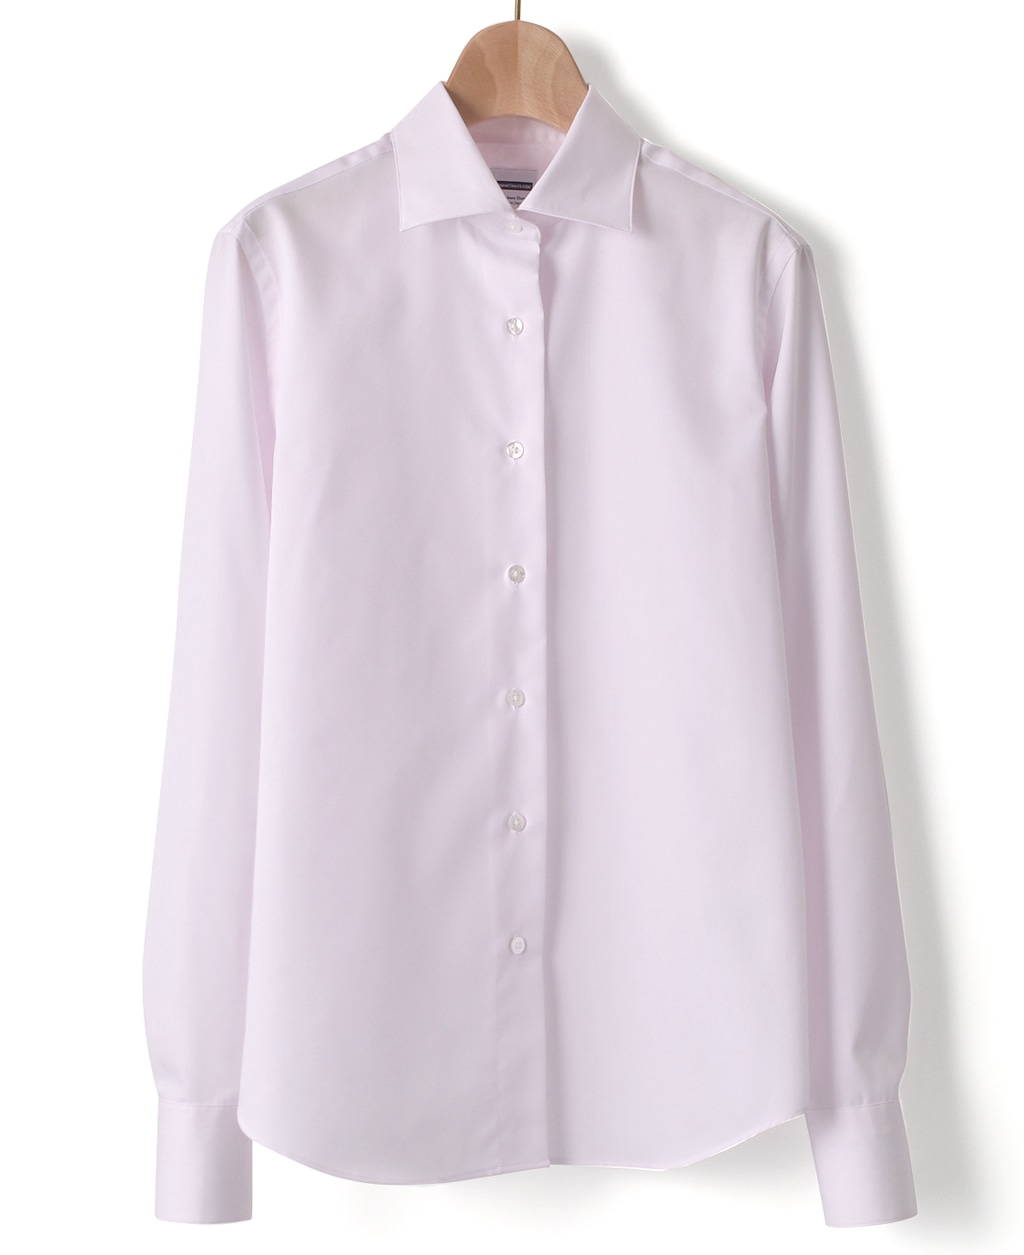 クラシックシャツ 34サイズ 5号 ピンク系 レディース メーカーズシャツ鎌倉 公式通販 日本製ワイシャツ ネクタイ ブラウス